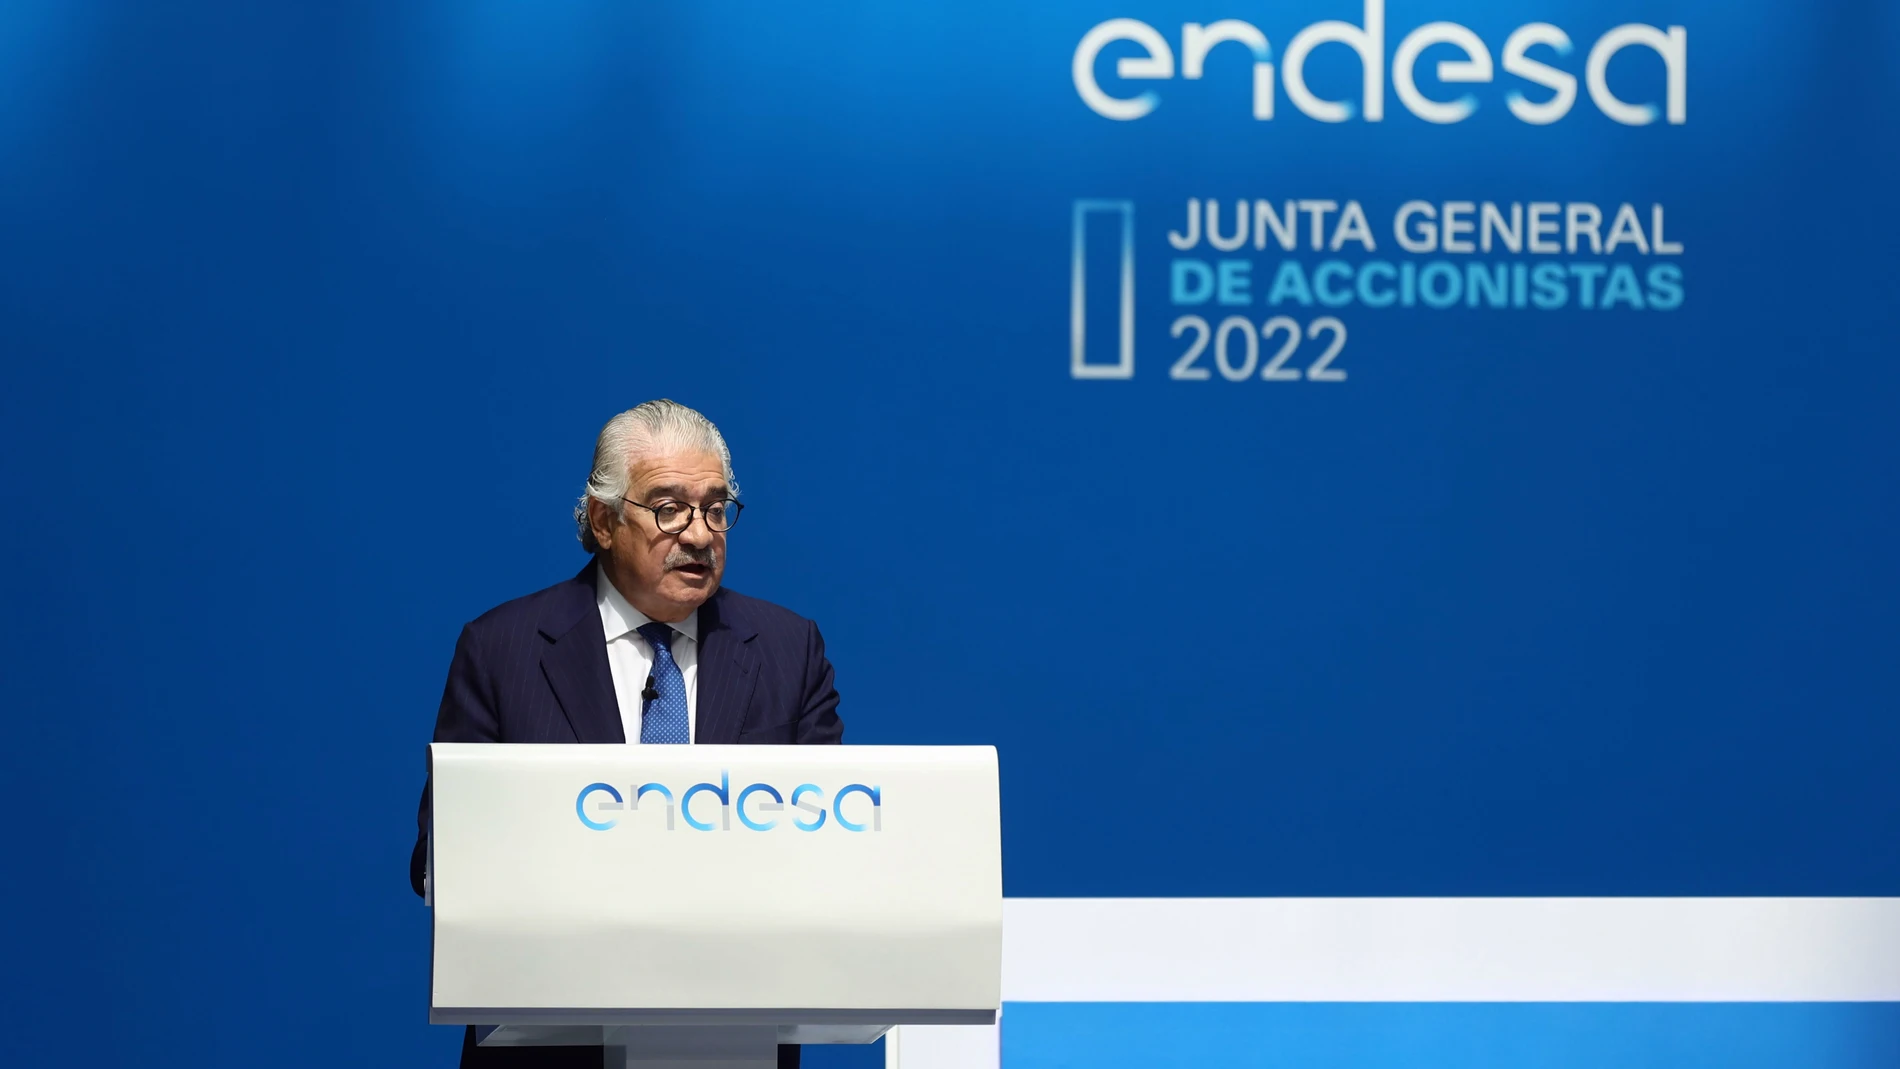 El consejero delegado de Endesa, José Bogas, interviene en la junta general de accionistas de Endesa